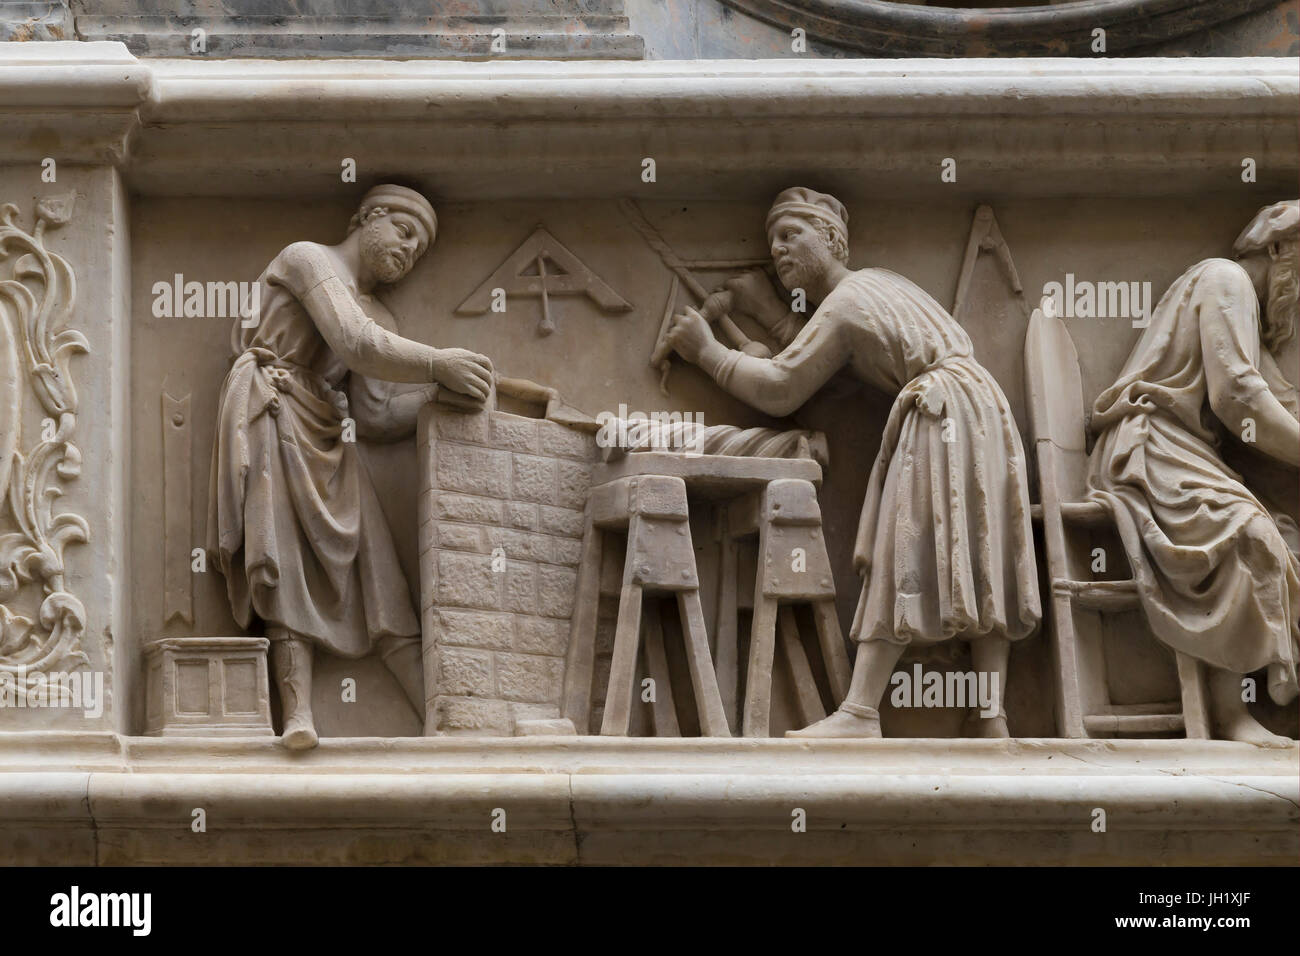 Mur de Orsanmichele, sculptures de la Guilde des charpentiers, Florence, Italie, Europe Banque D'Images